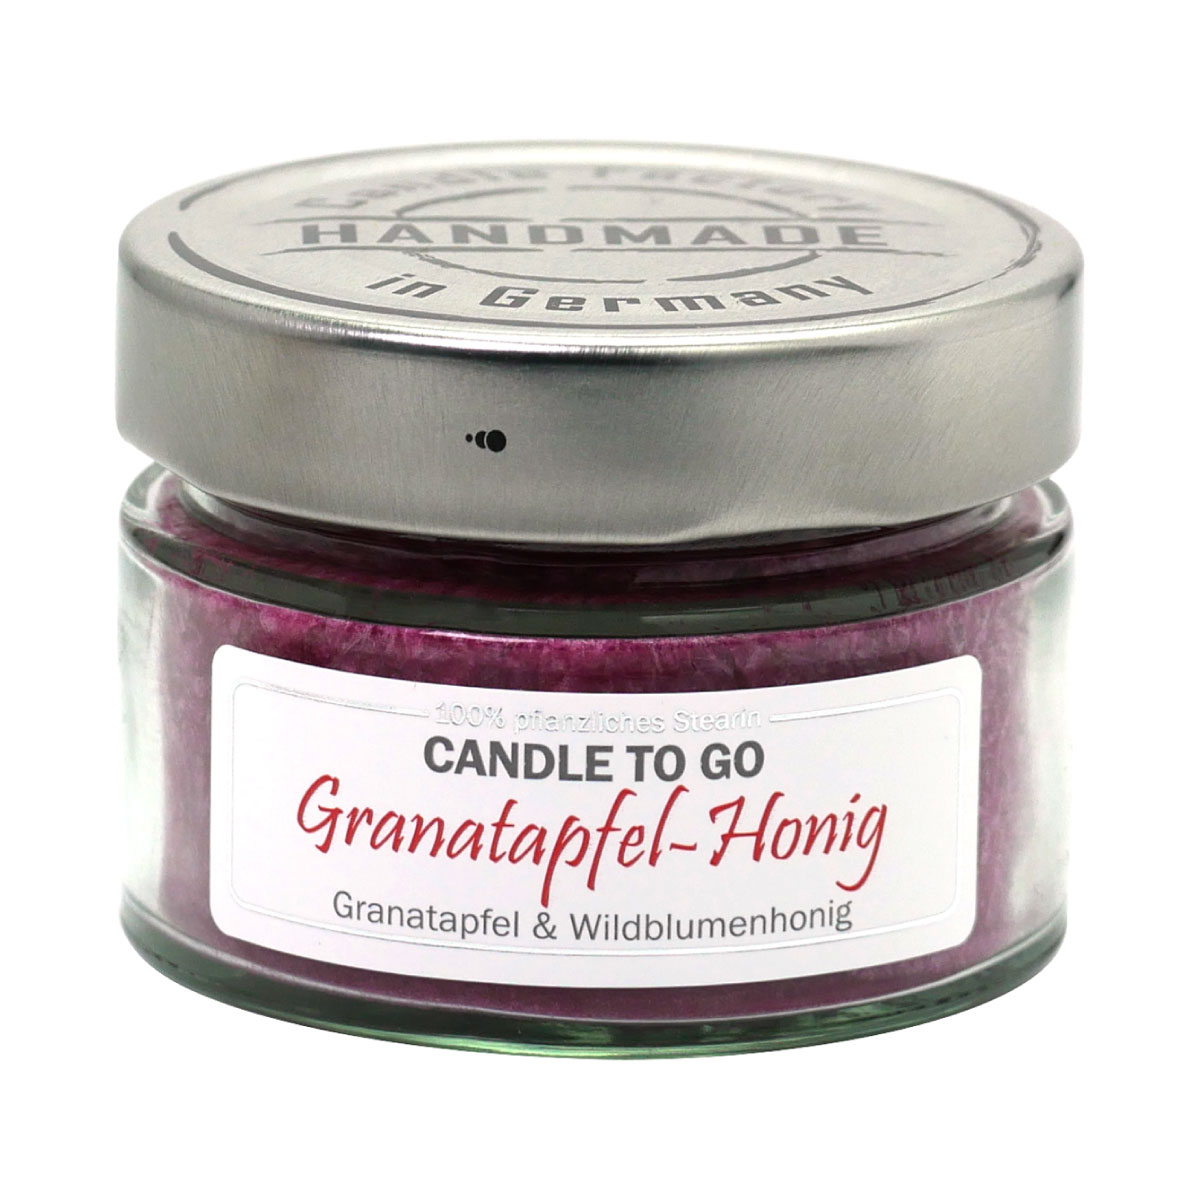 Granatapfel Honig - Candle to Go die Duftkerze für unterwegs